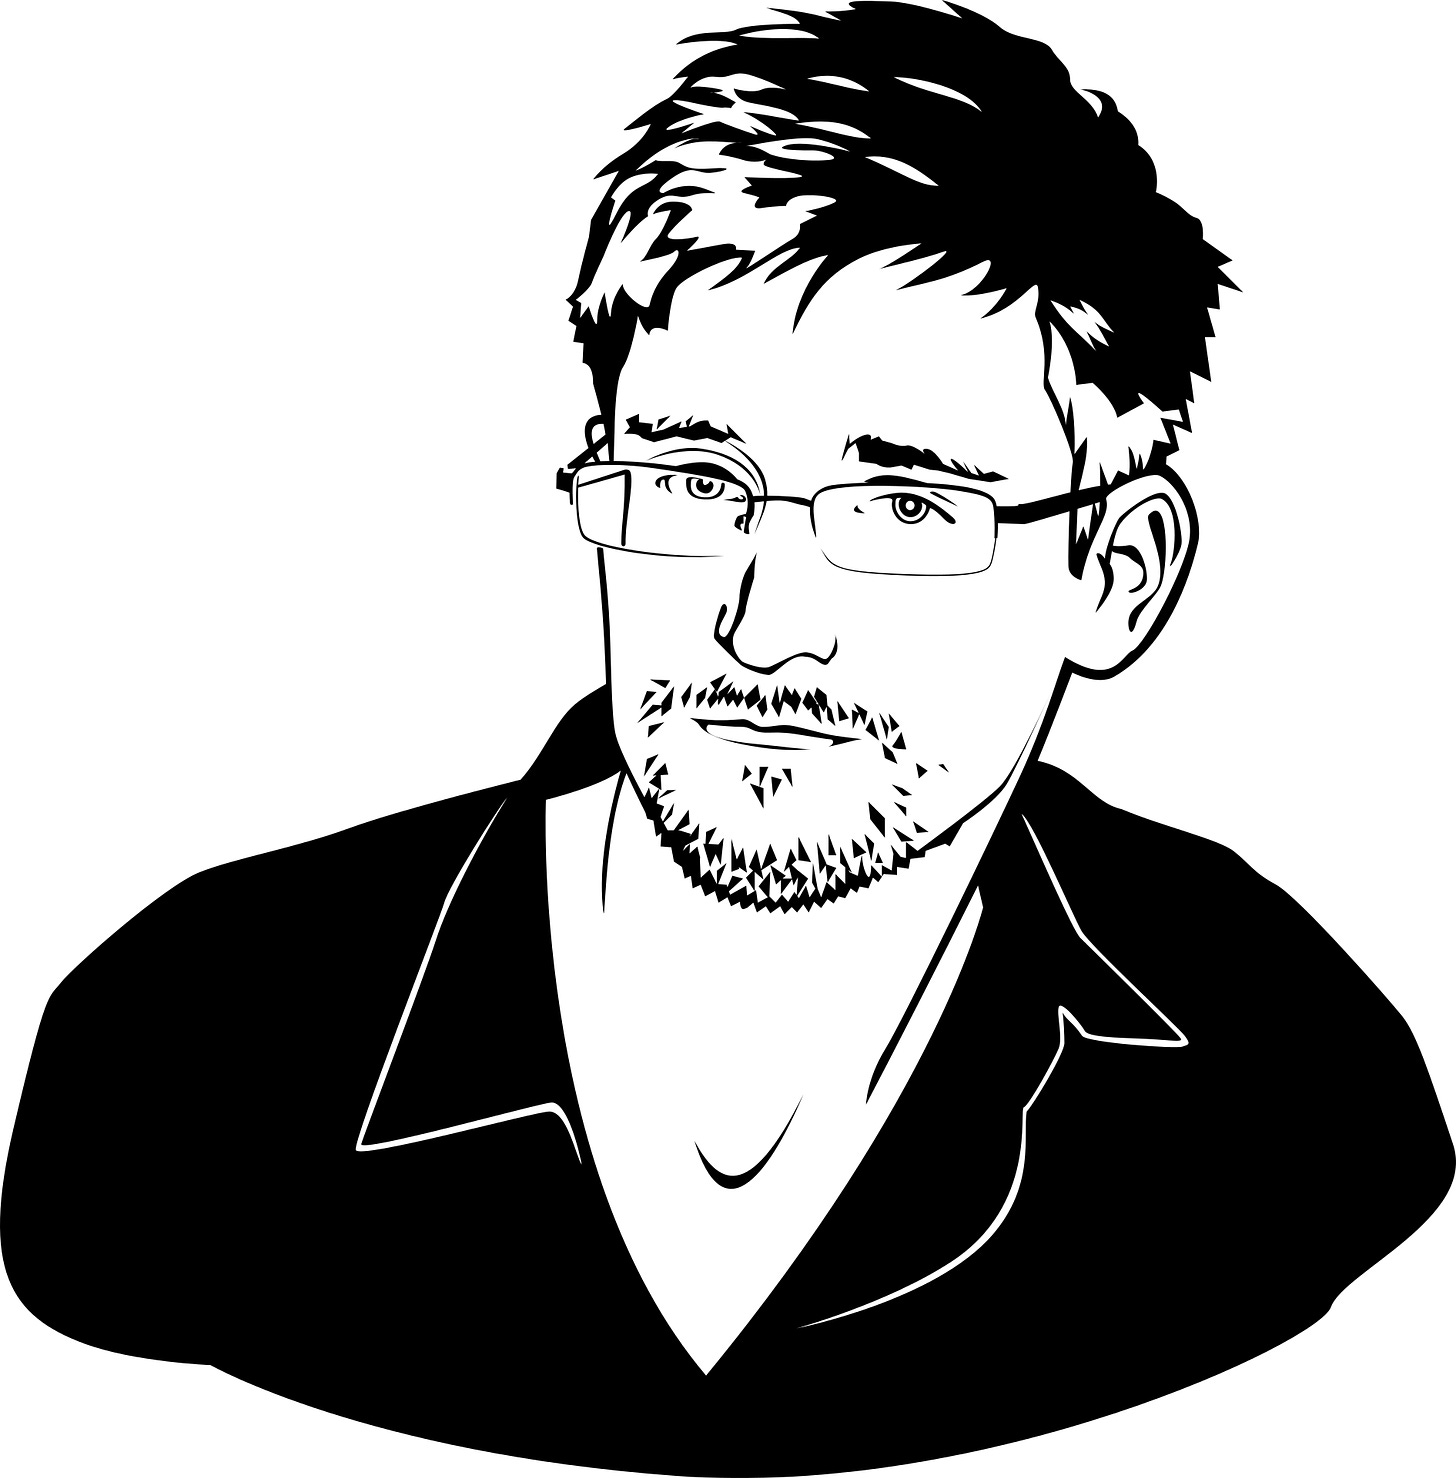 Snowden_Truth_Freedom_Fighter